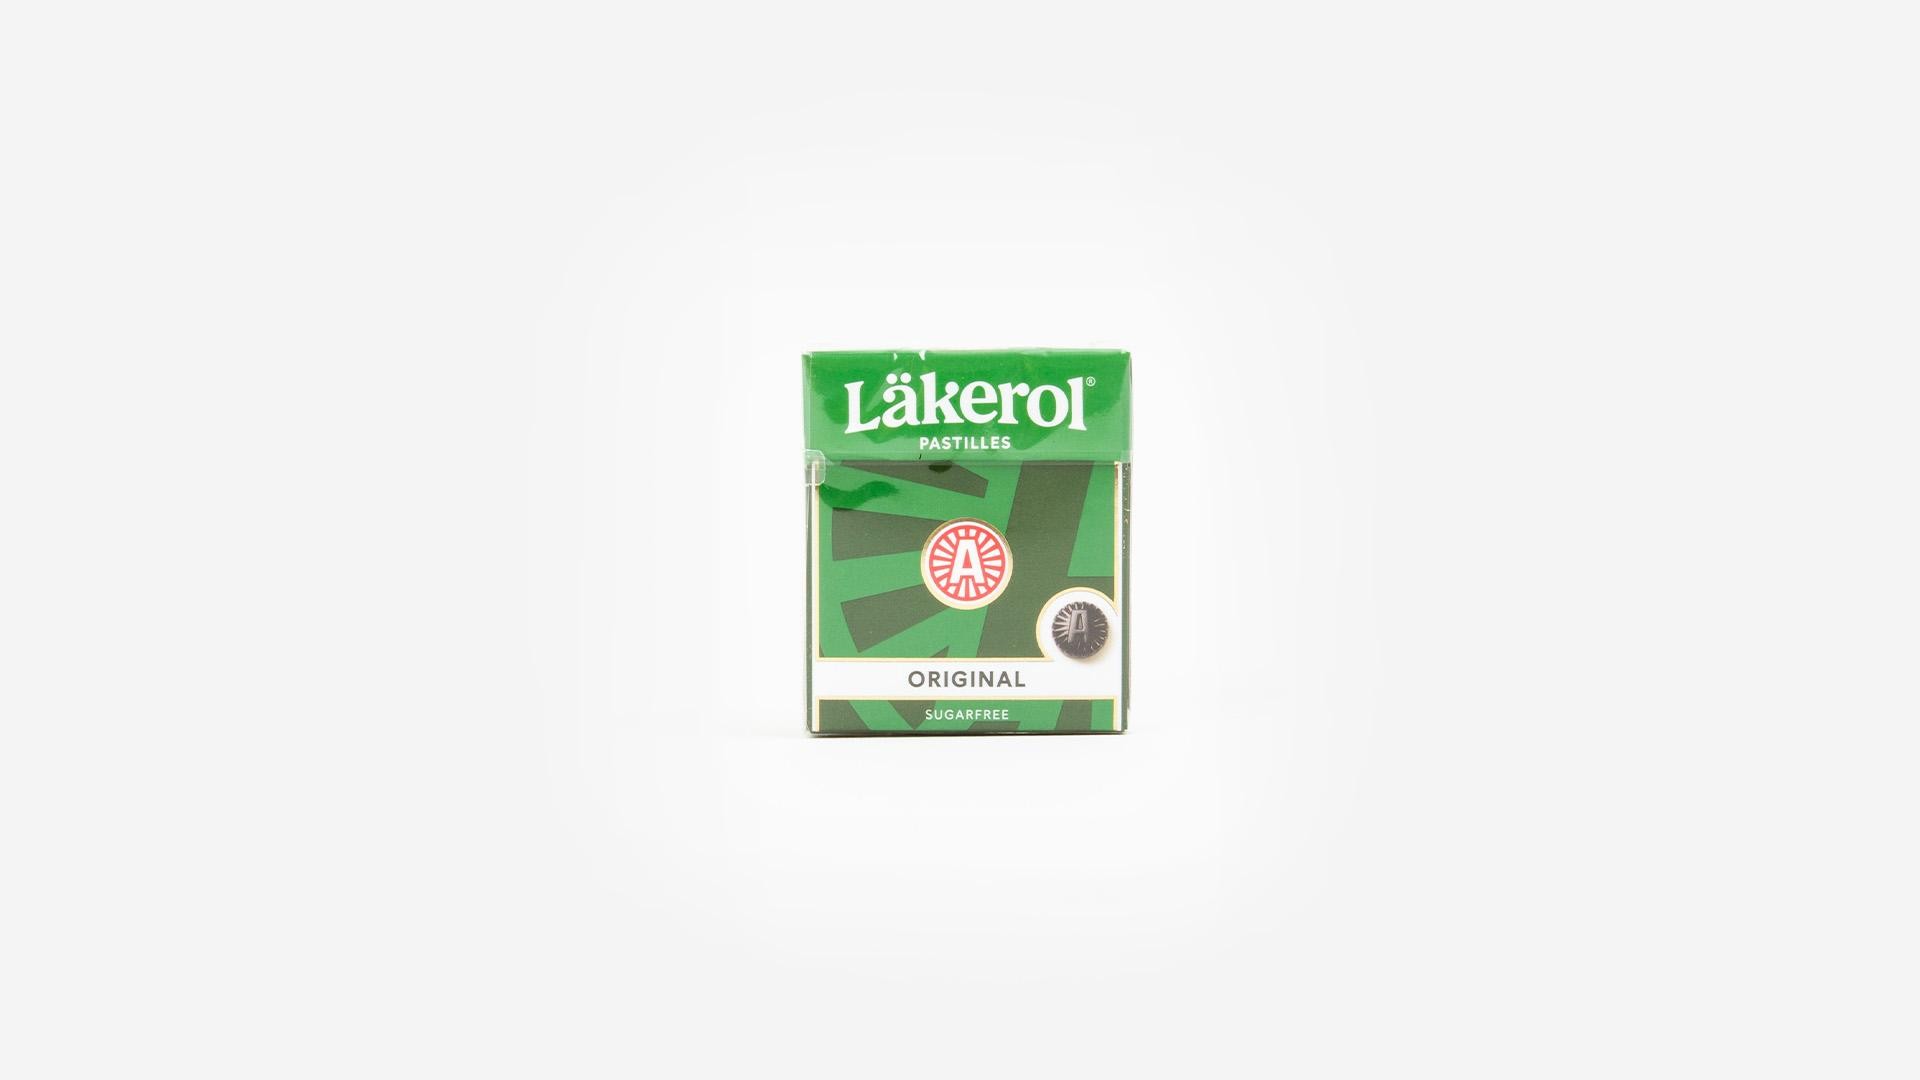 Lakerol Original Pastilles